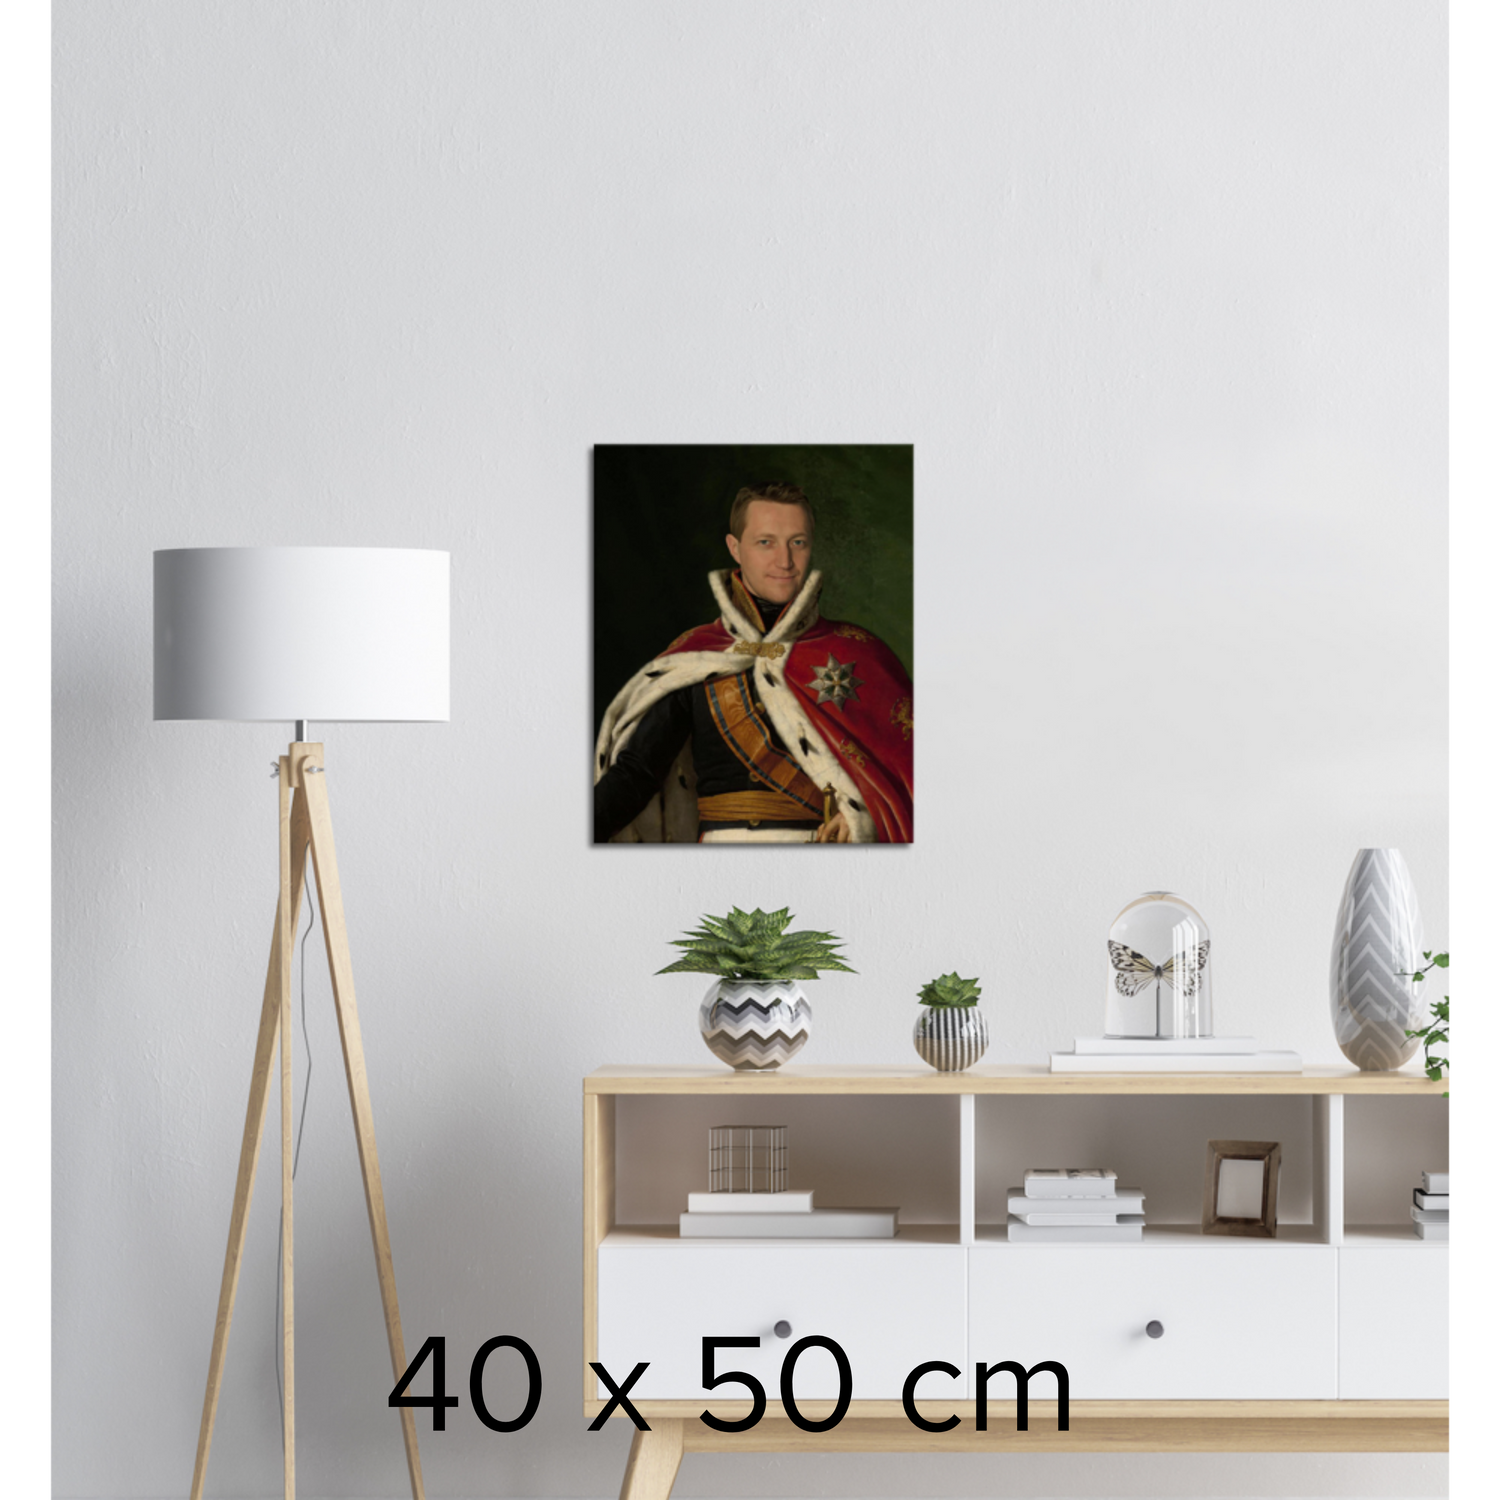 REGENTEN- Skräddarsytt kungligt porträtt - unik presentidé